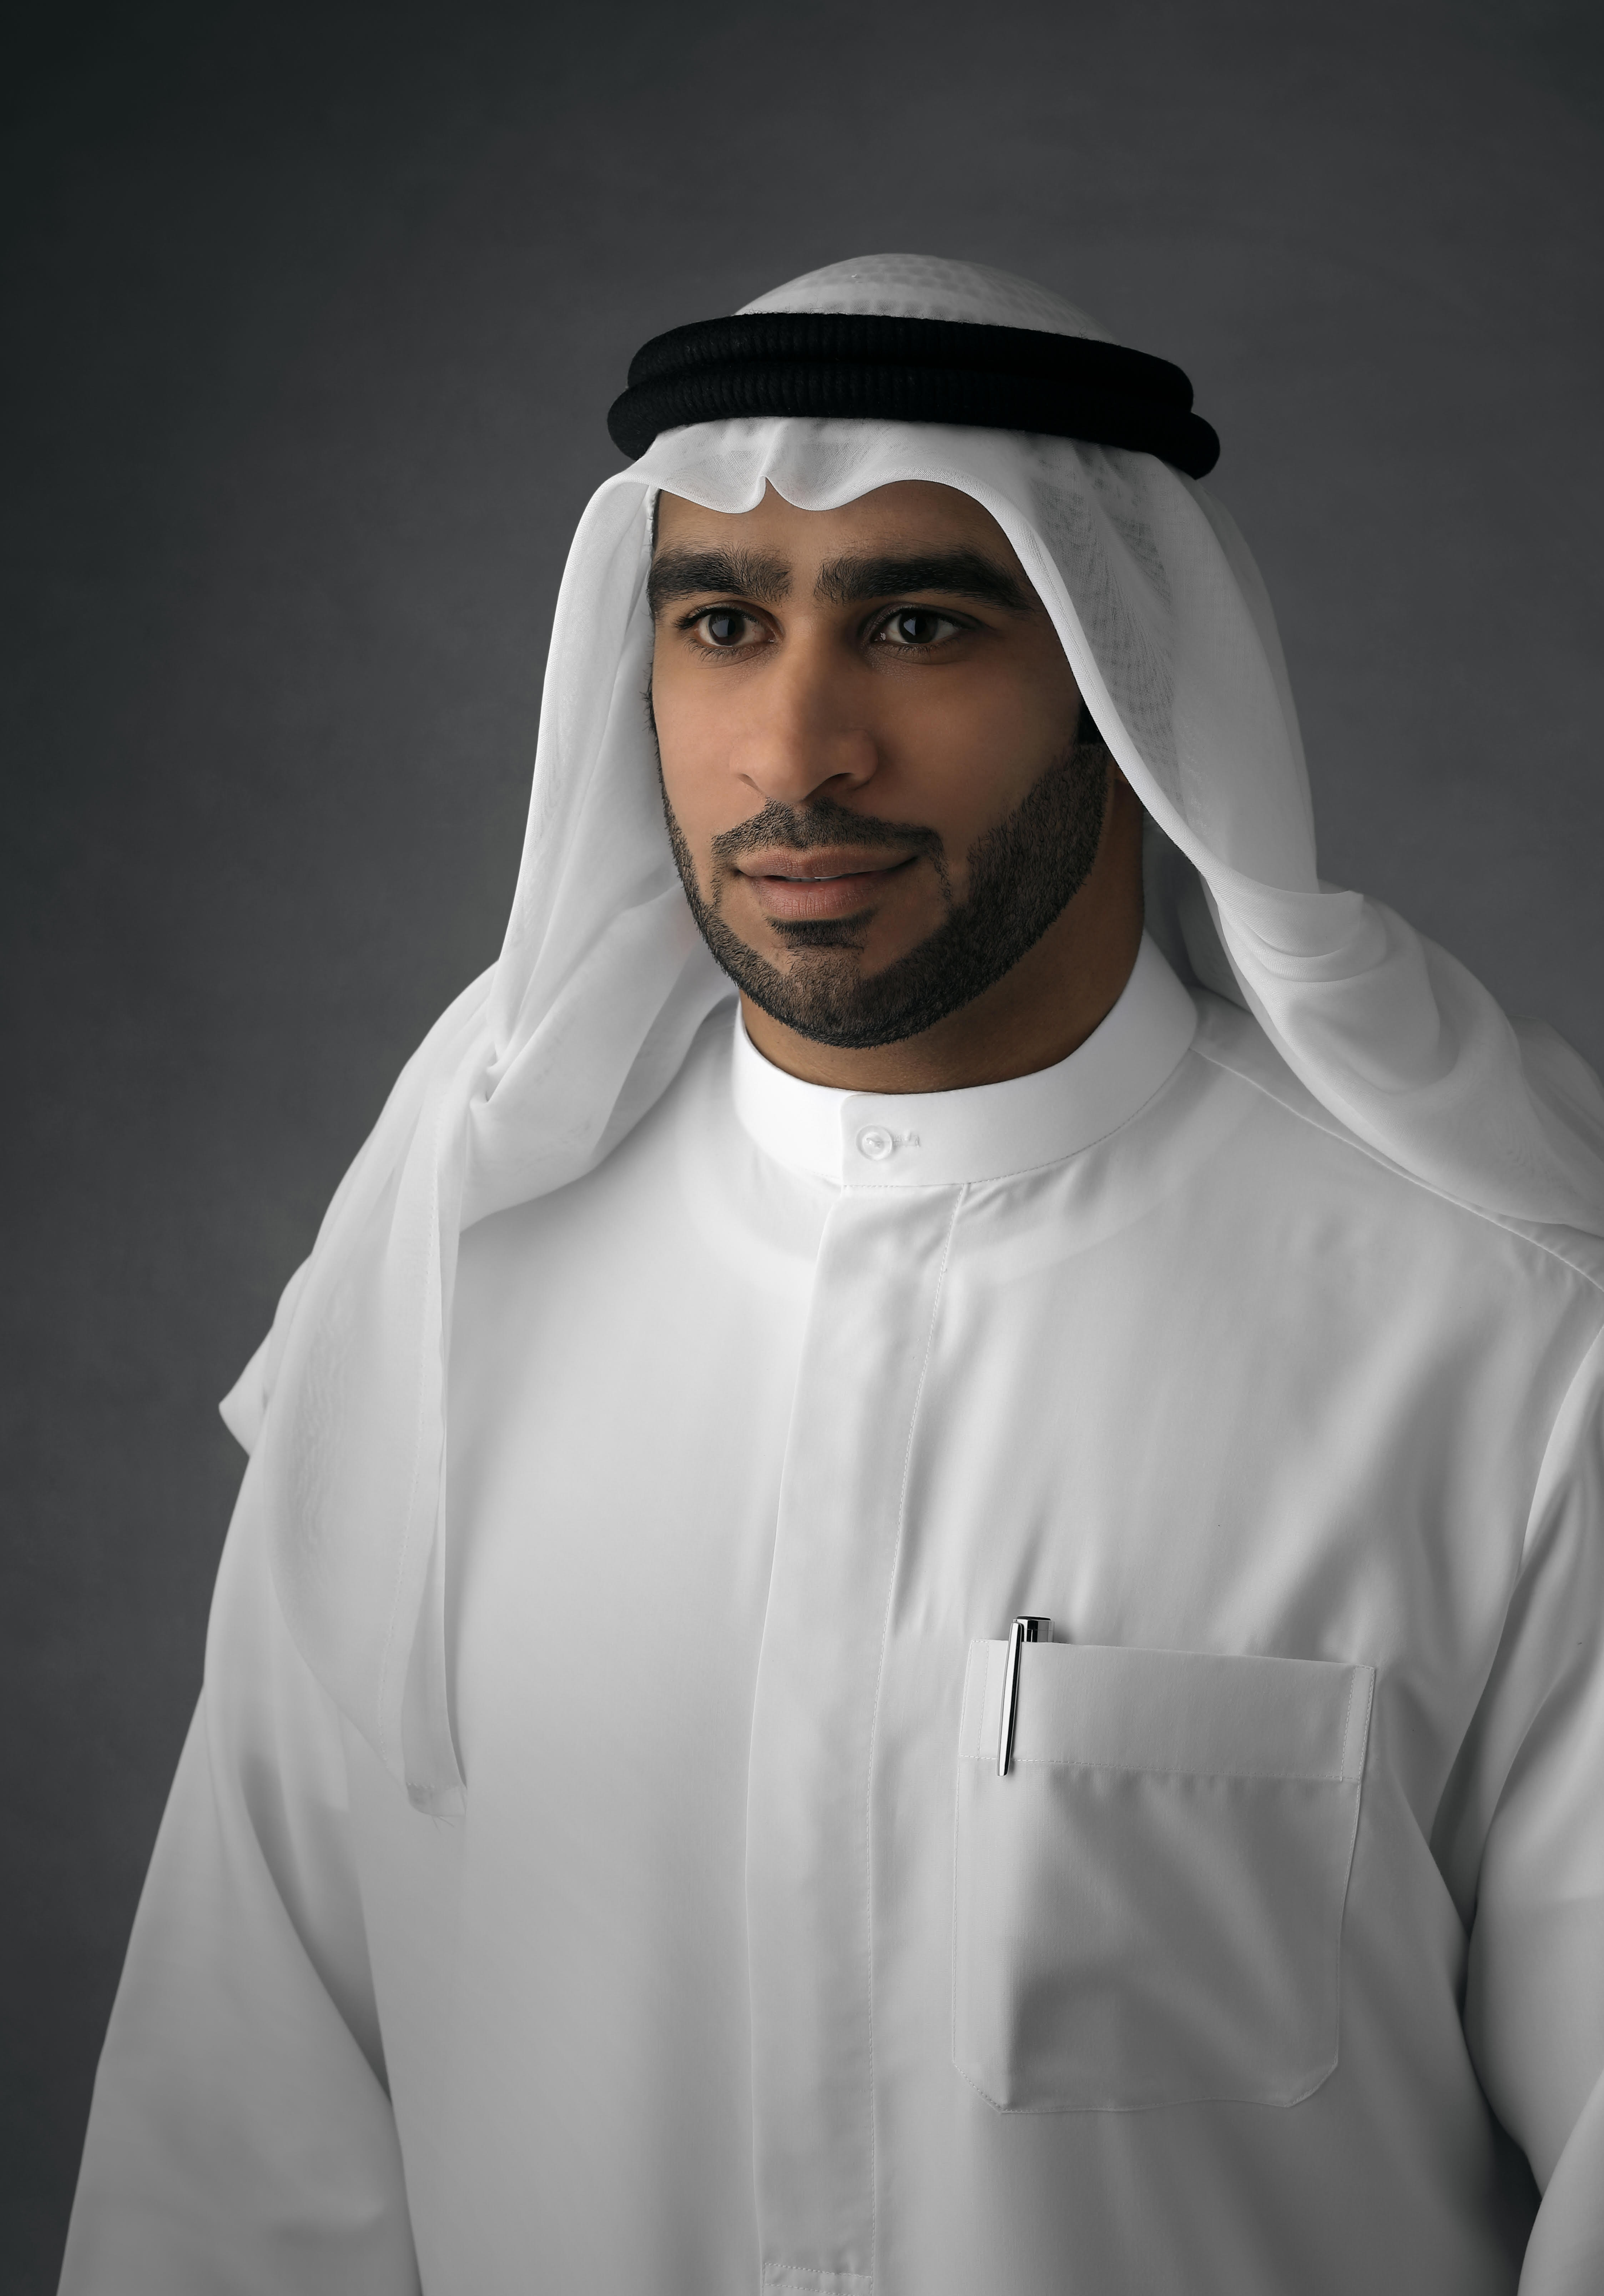 محمد جمعة المشرخ مدير مكتب الشارقة للاستثمار الأجنبي استثمر في الشارقة